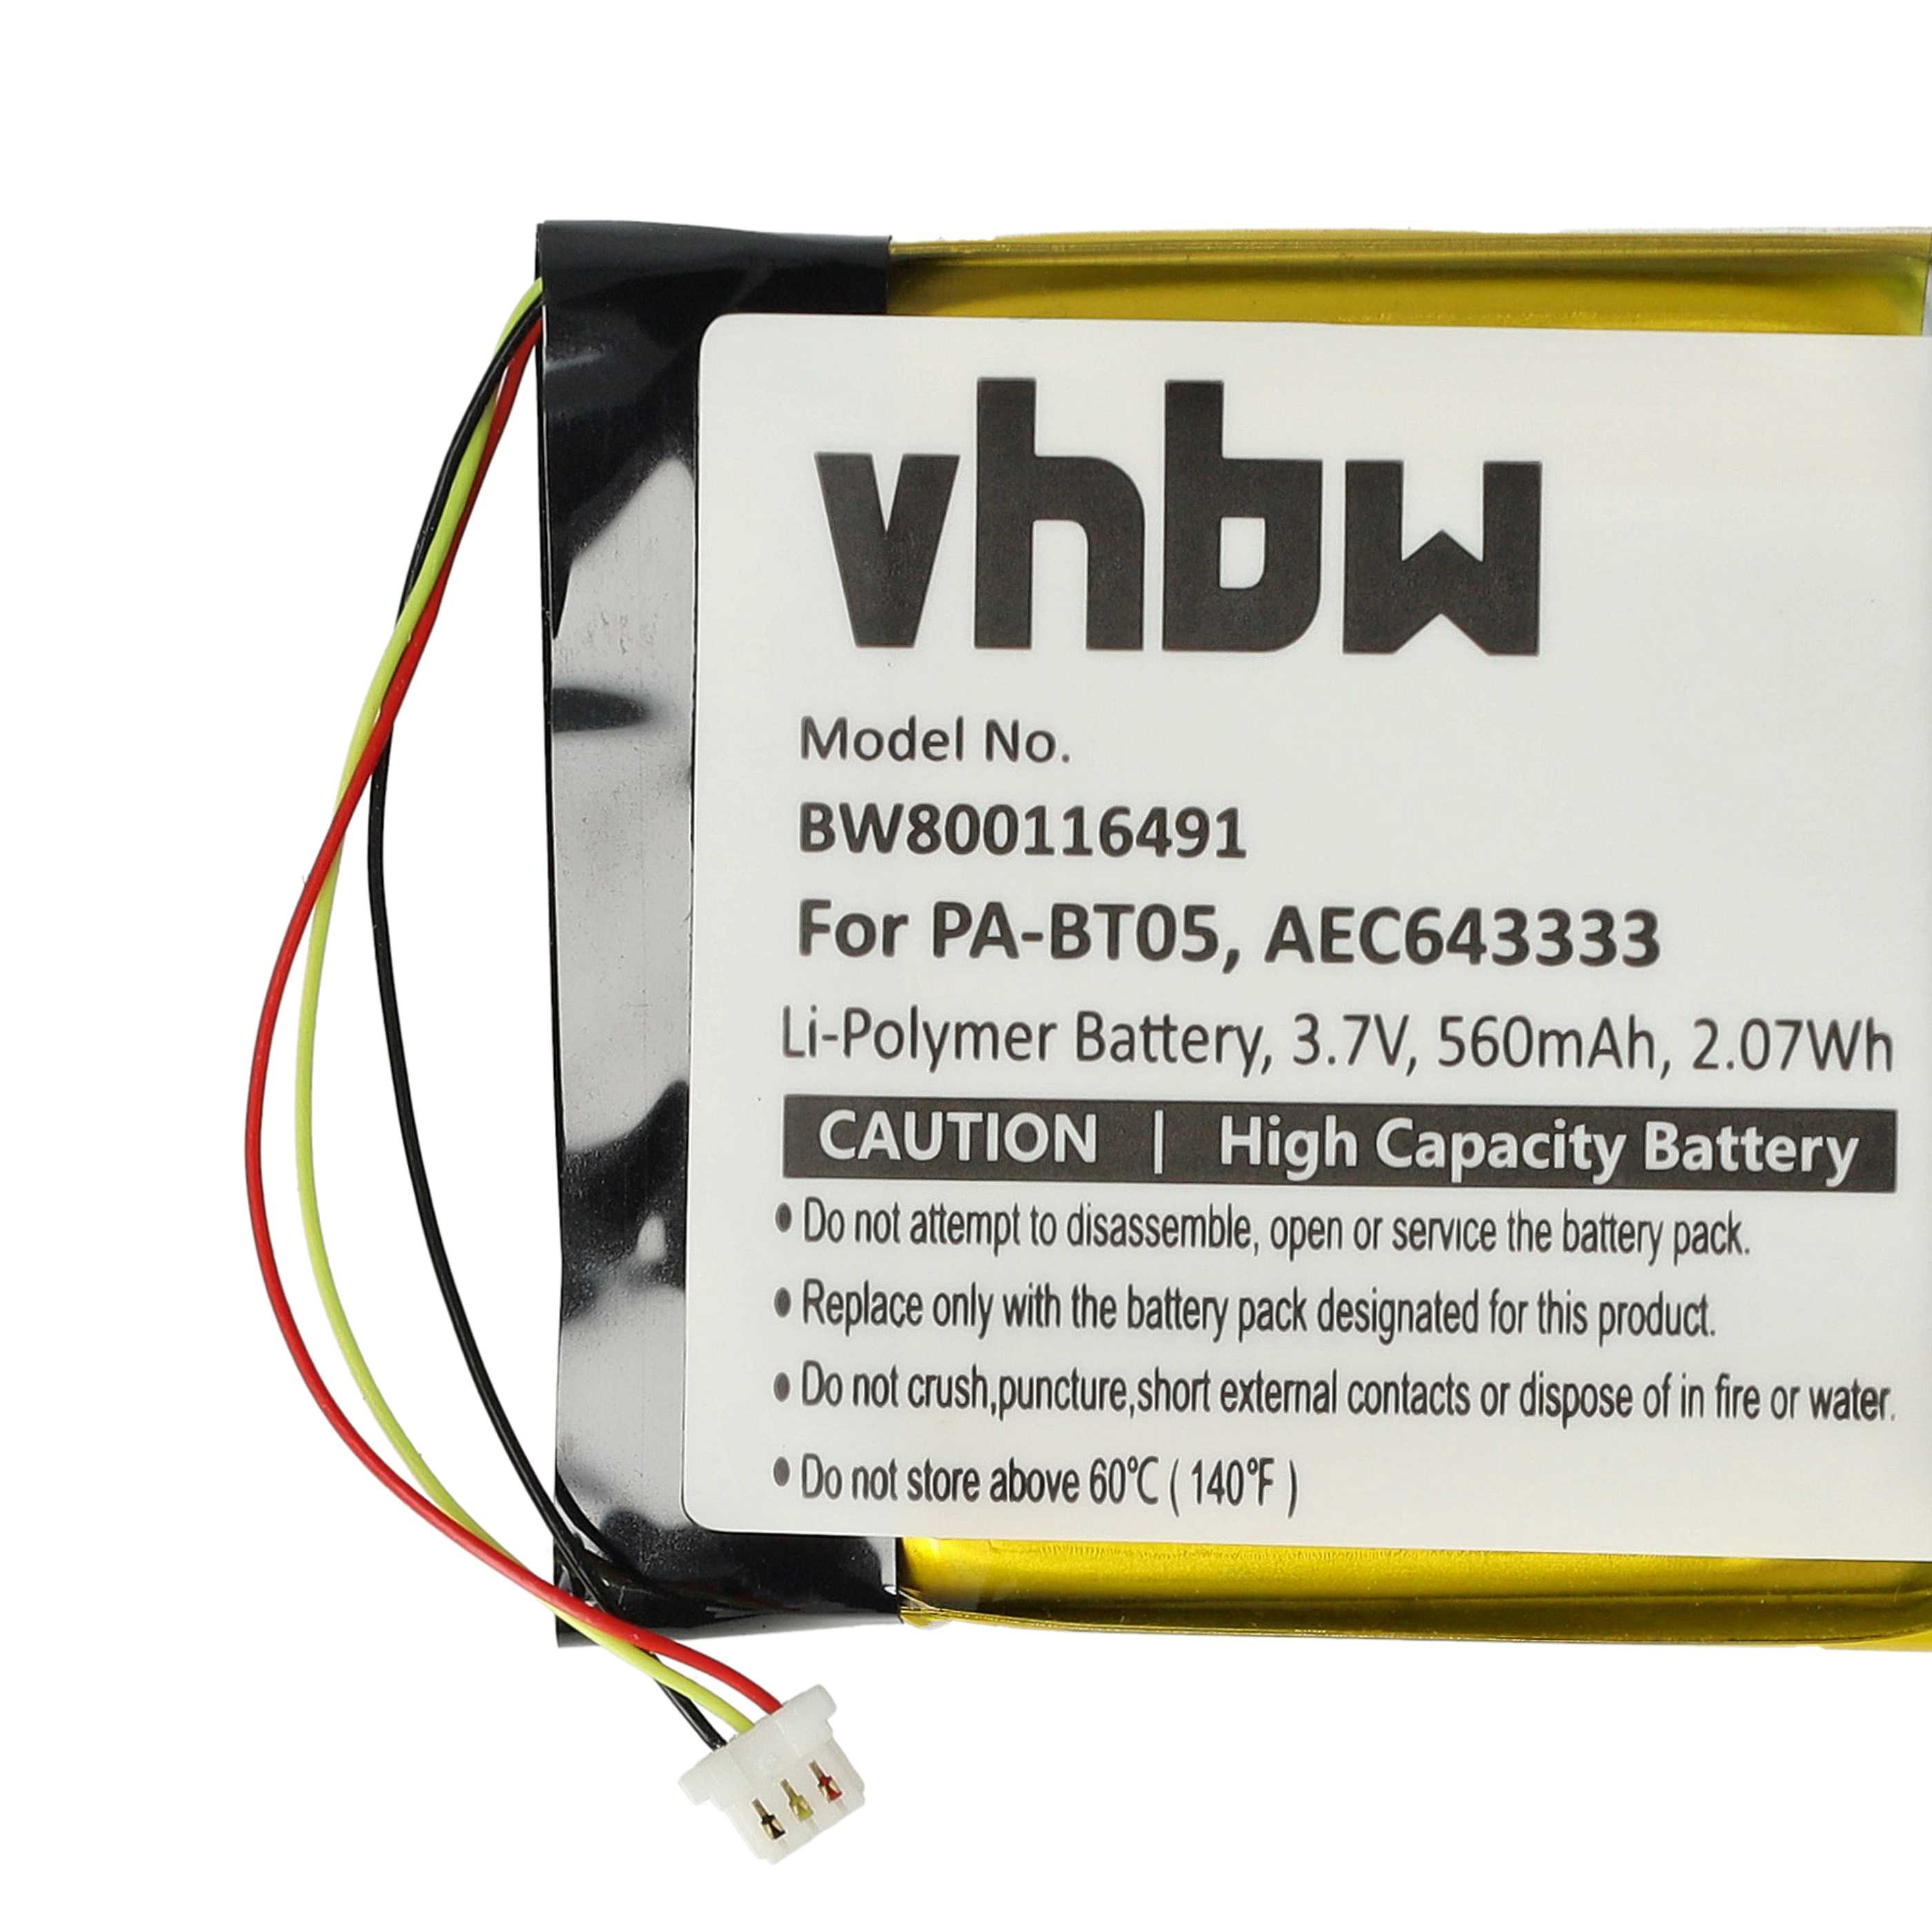 Batterie remplace Beats PA-BT05, AEC643333 pour casque audio - 560mAh 3,7V Li-polymère